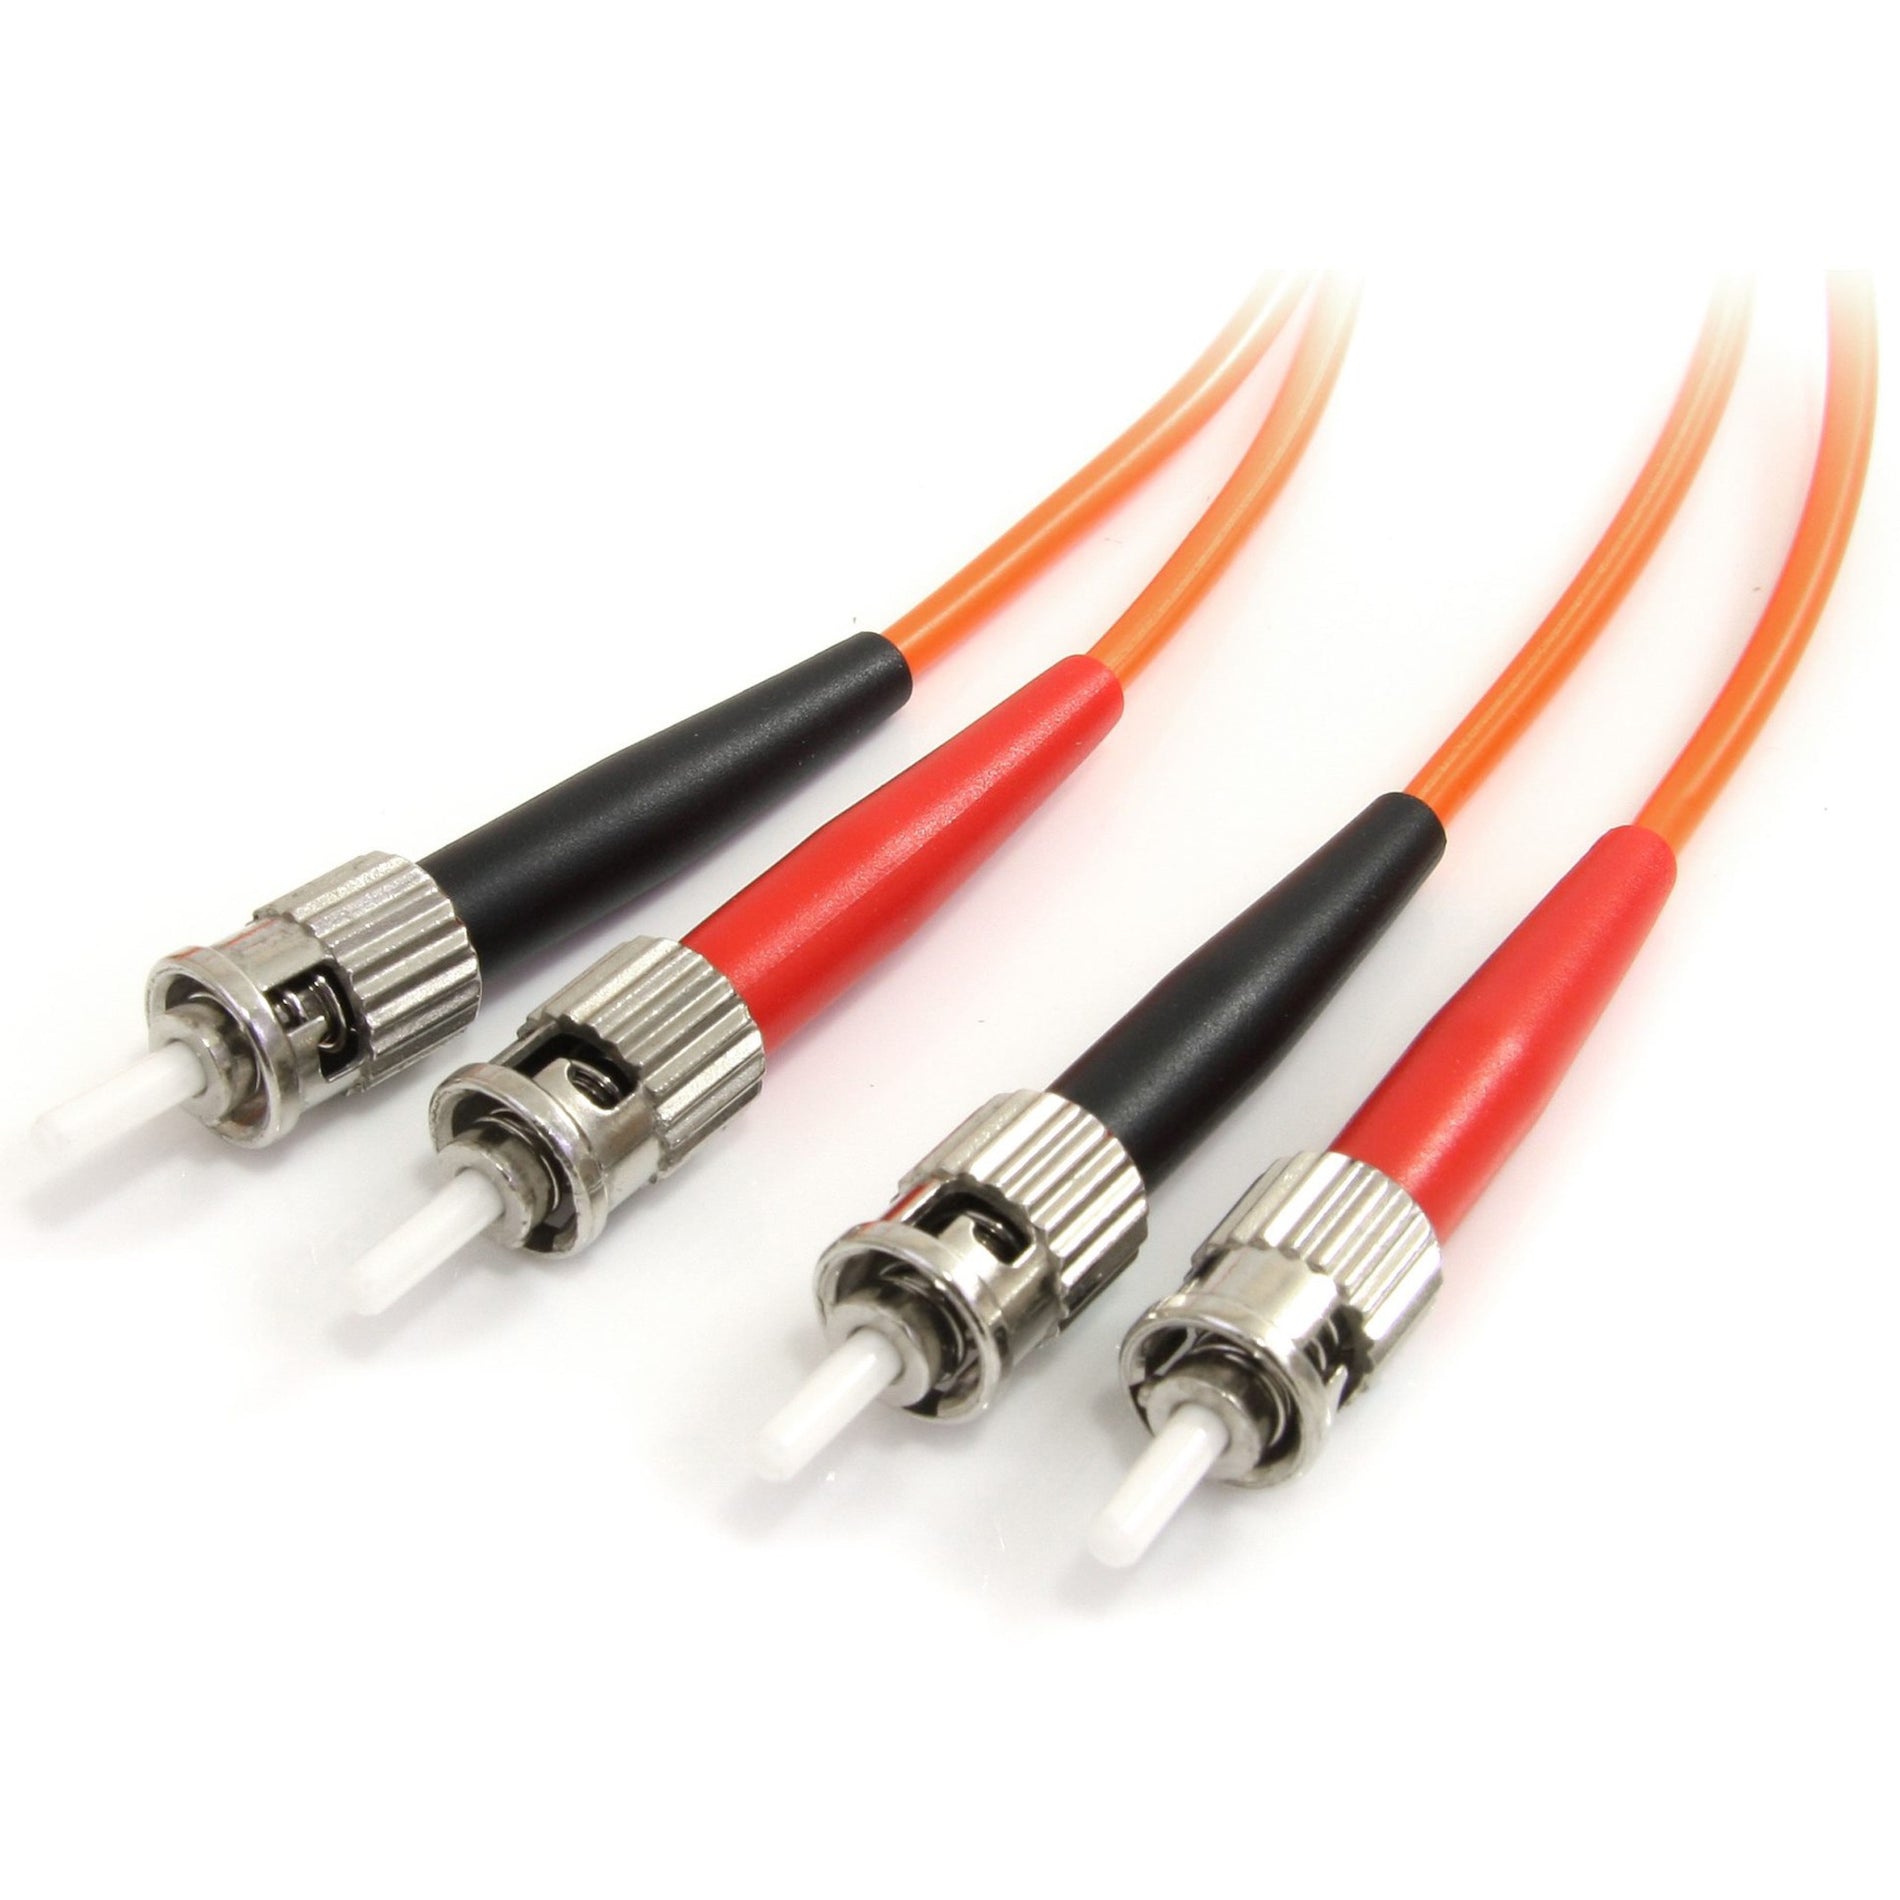 StarTech.com FIBSTST1 Fiber Optic Duplex Patch Network Cable, 1m, Multi-mode, 10 Gbit/s, LSZH